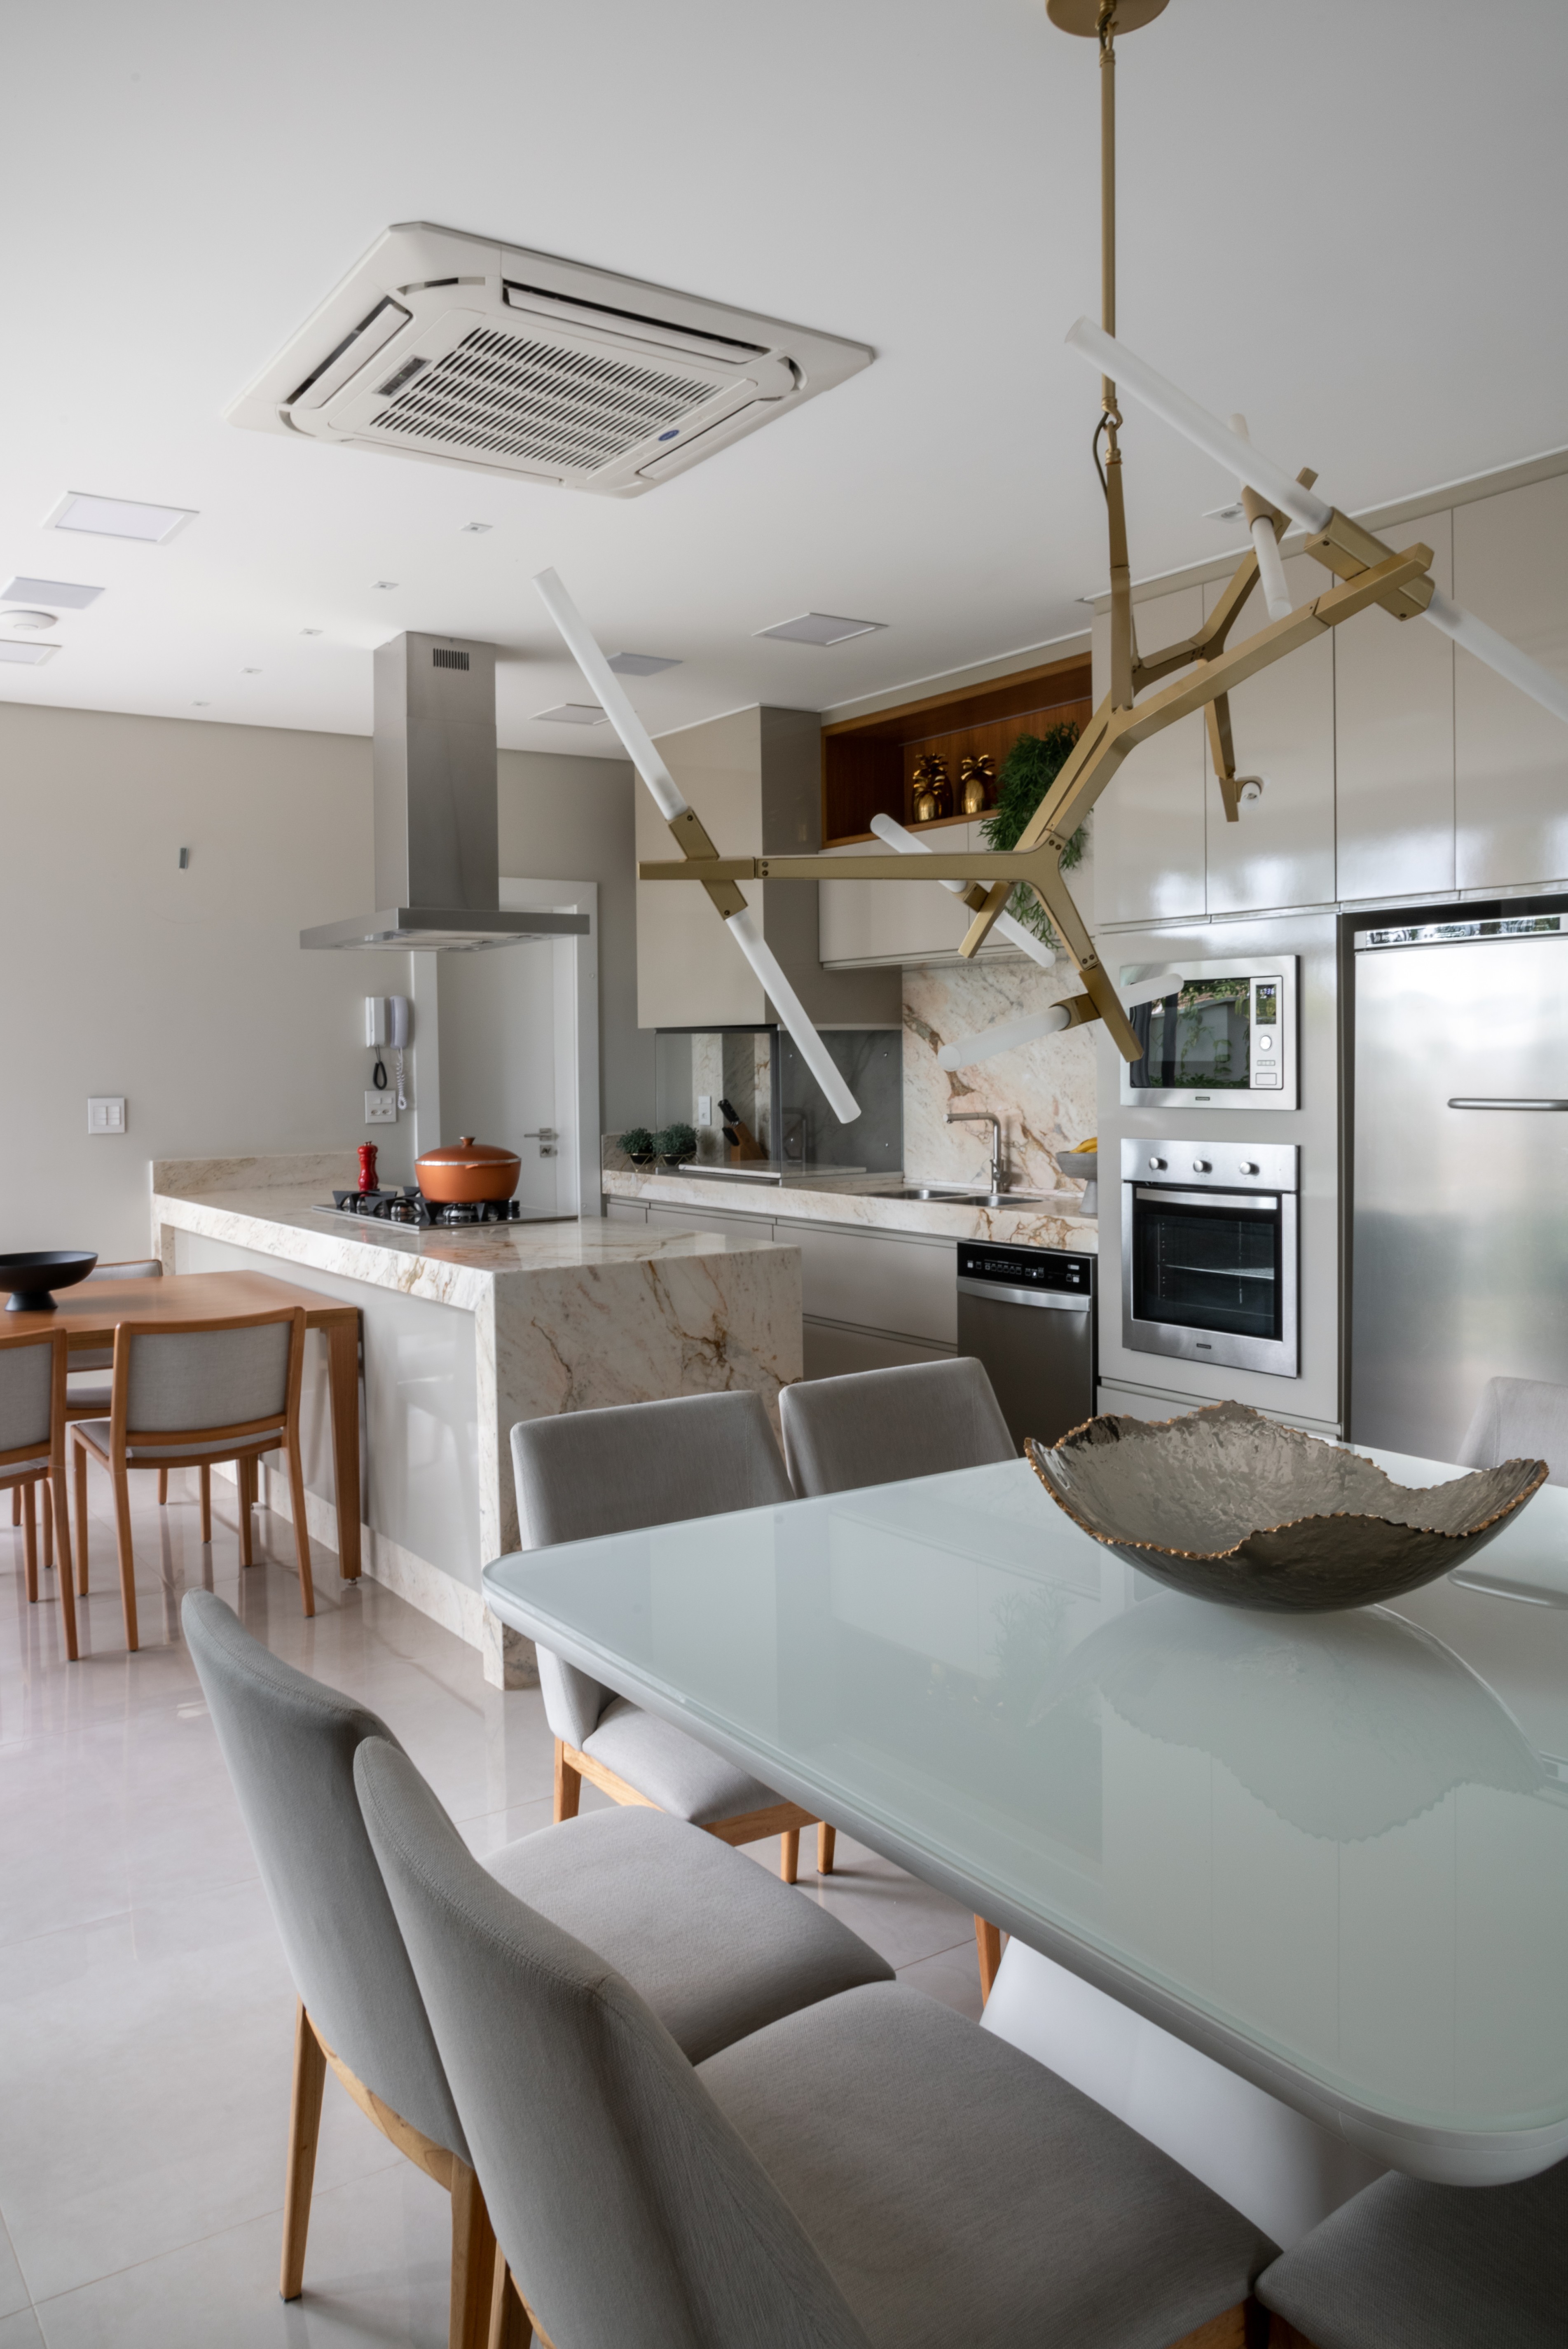 Décor do dia: bancada de mármore é destaque de cozinha integrada à sala de jantar  (Foto: Fávaro Jr.)